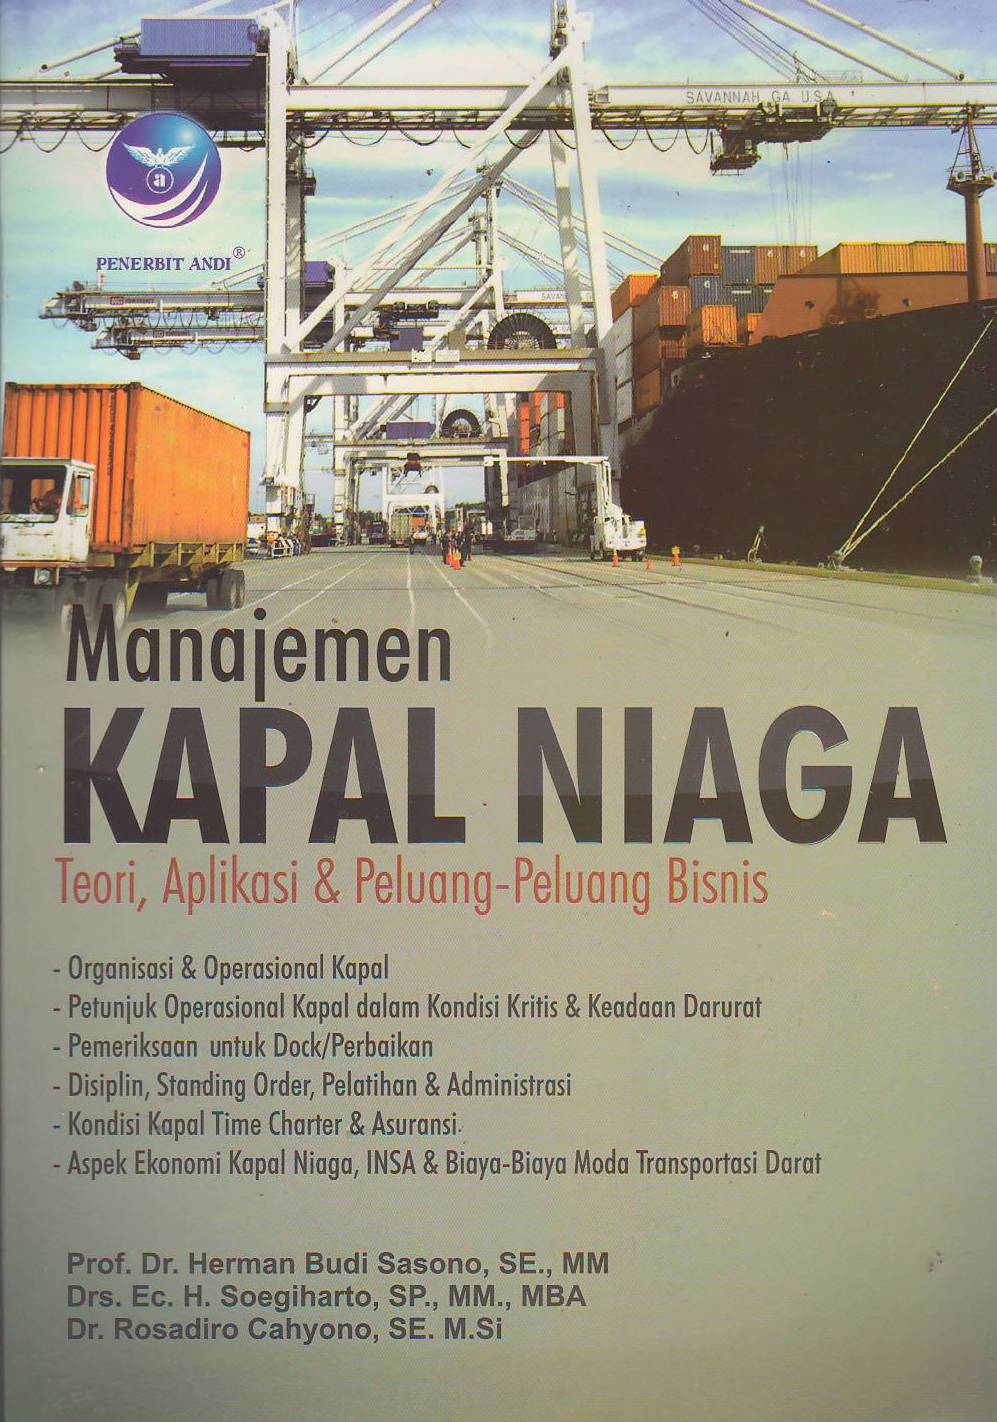 Manajemen Kapal Niaga : Teori, Aplikasi & Peluang - Peluang Bisnis